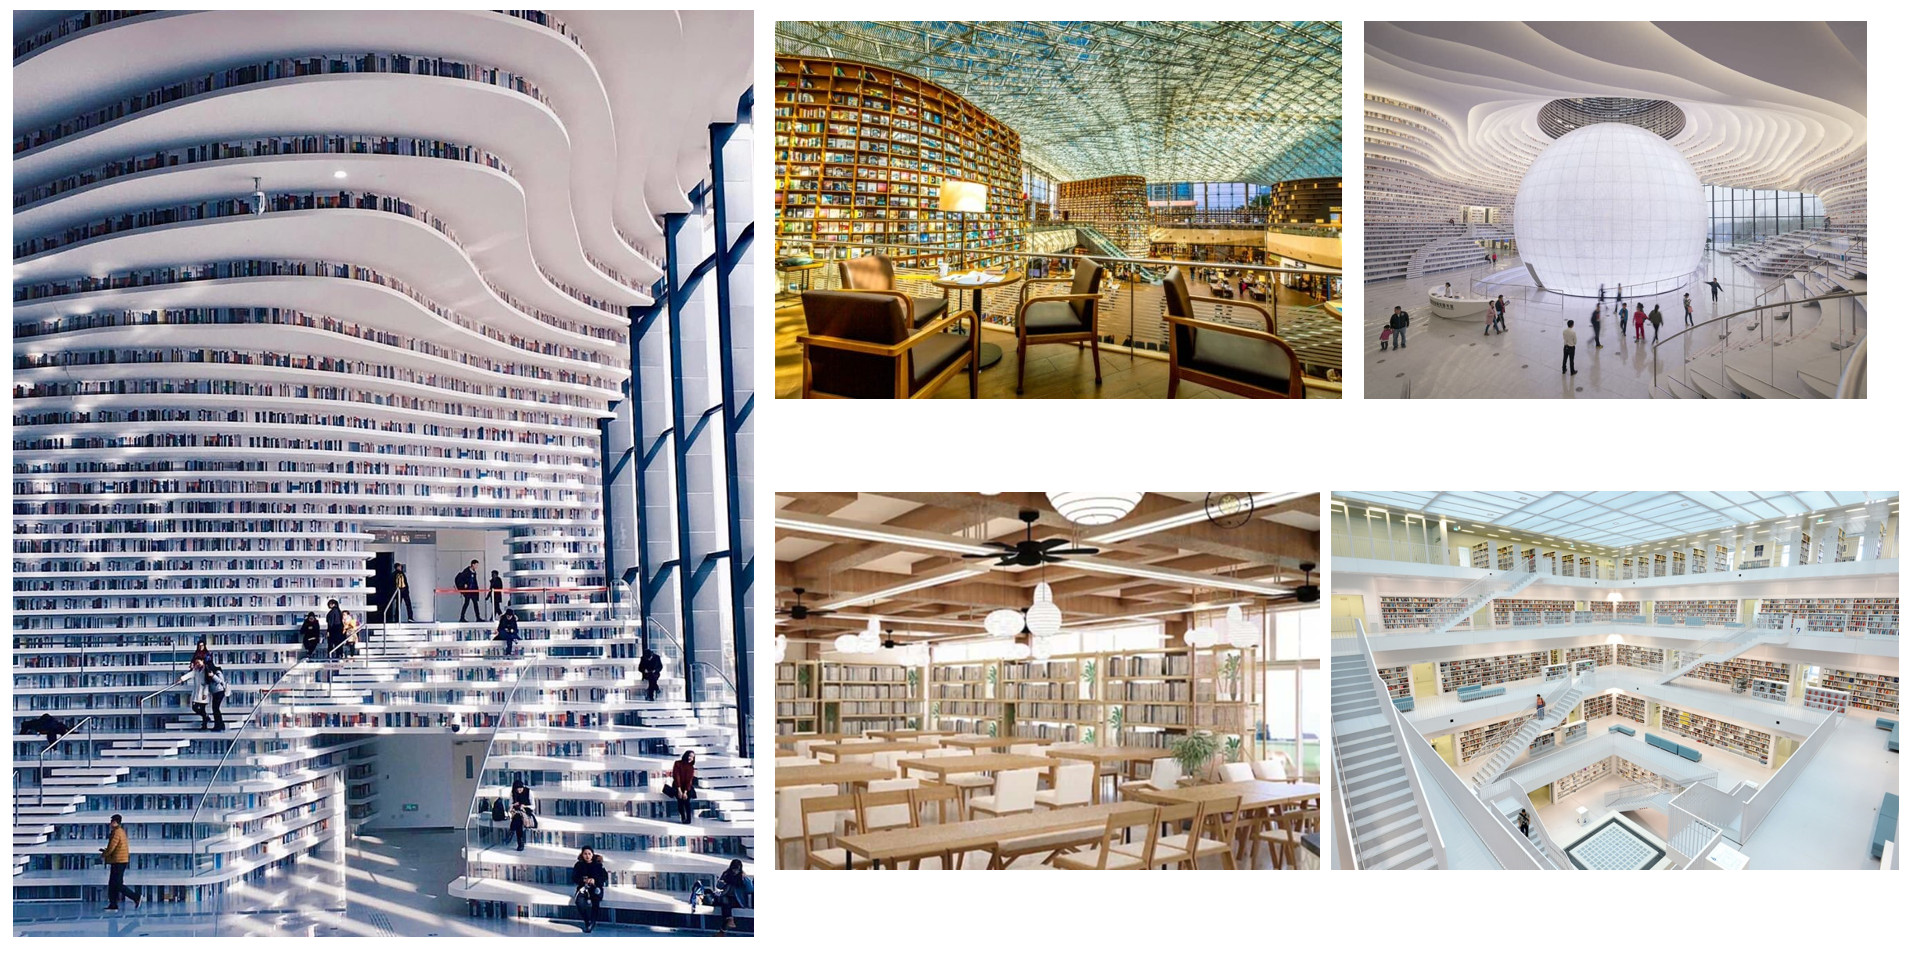 Thư viện - Trung tâm văn hóa đọc lớn nhất Đông Nam Á tại Meyhomes Crystal City Phú Quốc